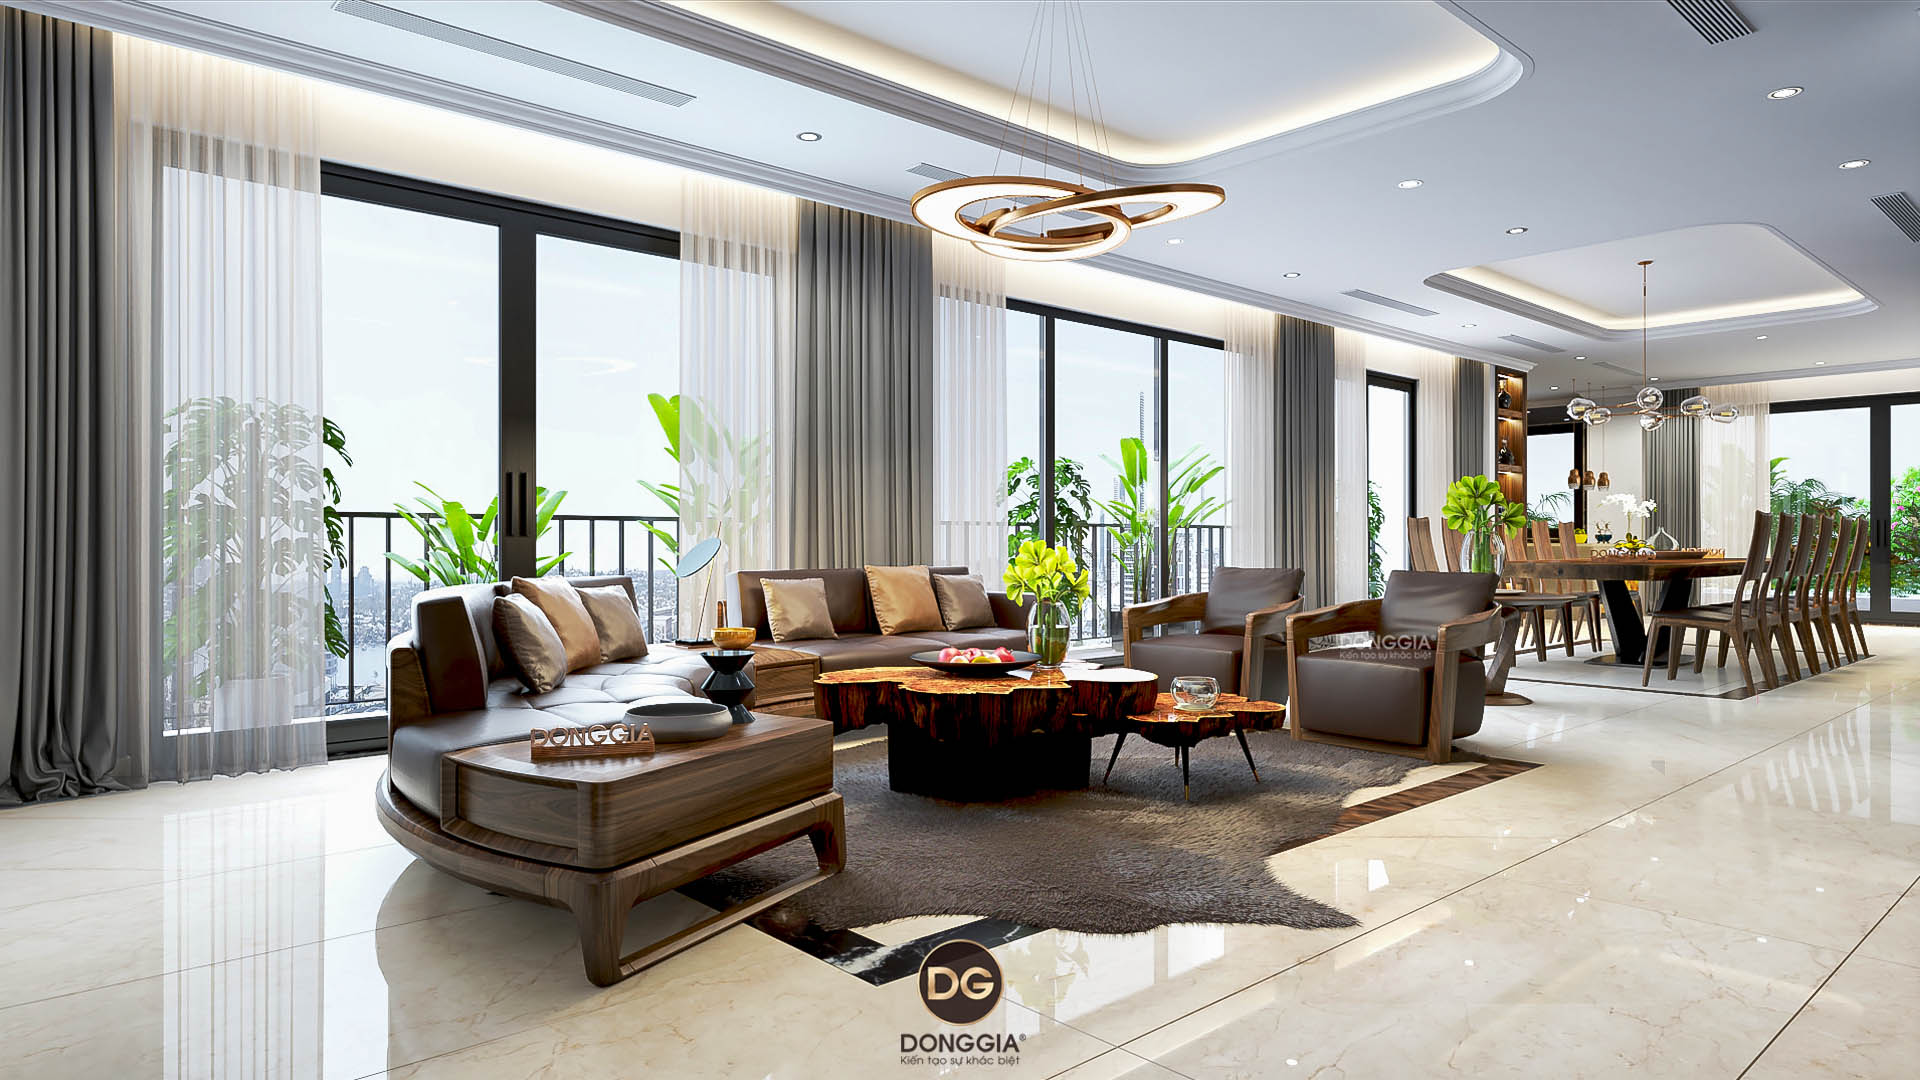 Các yếu tố không thể bỏ qua khi thiết kế phòng khách hiện đại là sự tiện nghi và thẩm mỹ. Ghế sofa màu xám sáng, kết hợp với tường nhà màu trắng giúp căn phòng trở nên tươi mới và sáng sủa hơn. Đừng quên tận dụng những vật dụng trang trí nhỏ để tạo điểm nhấn cho không gian sống.